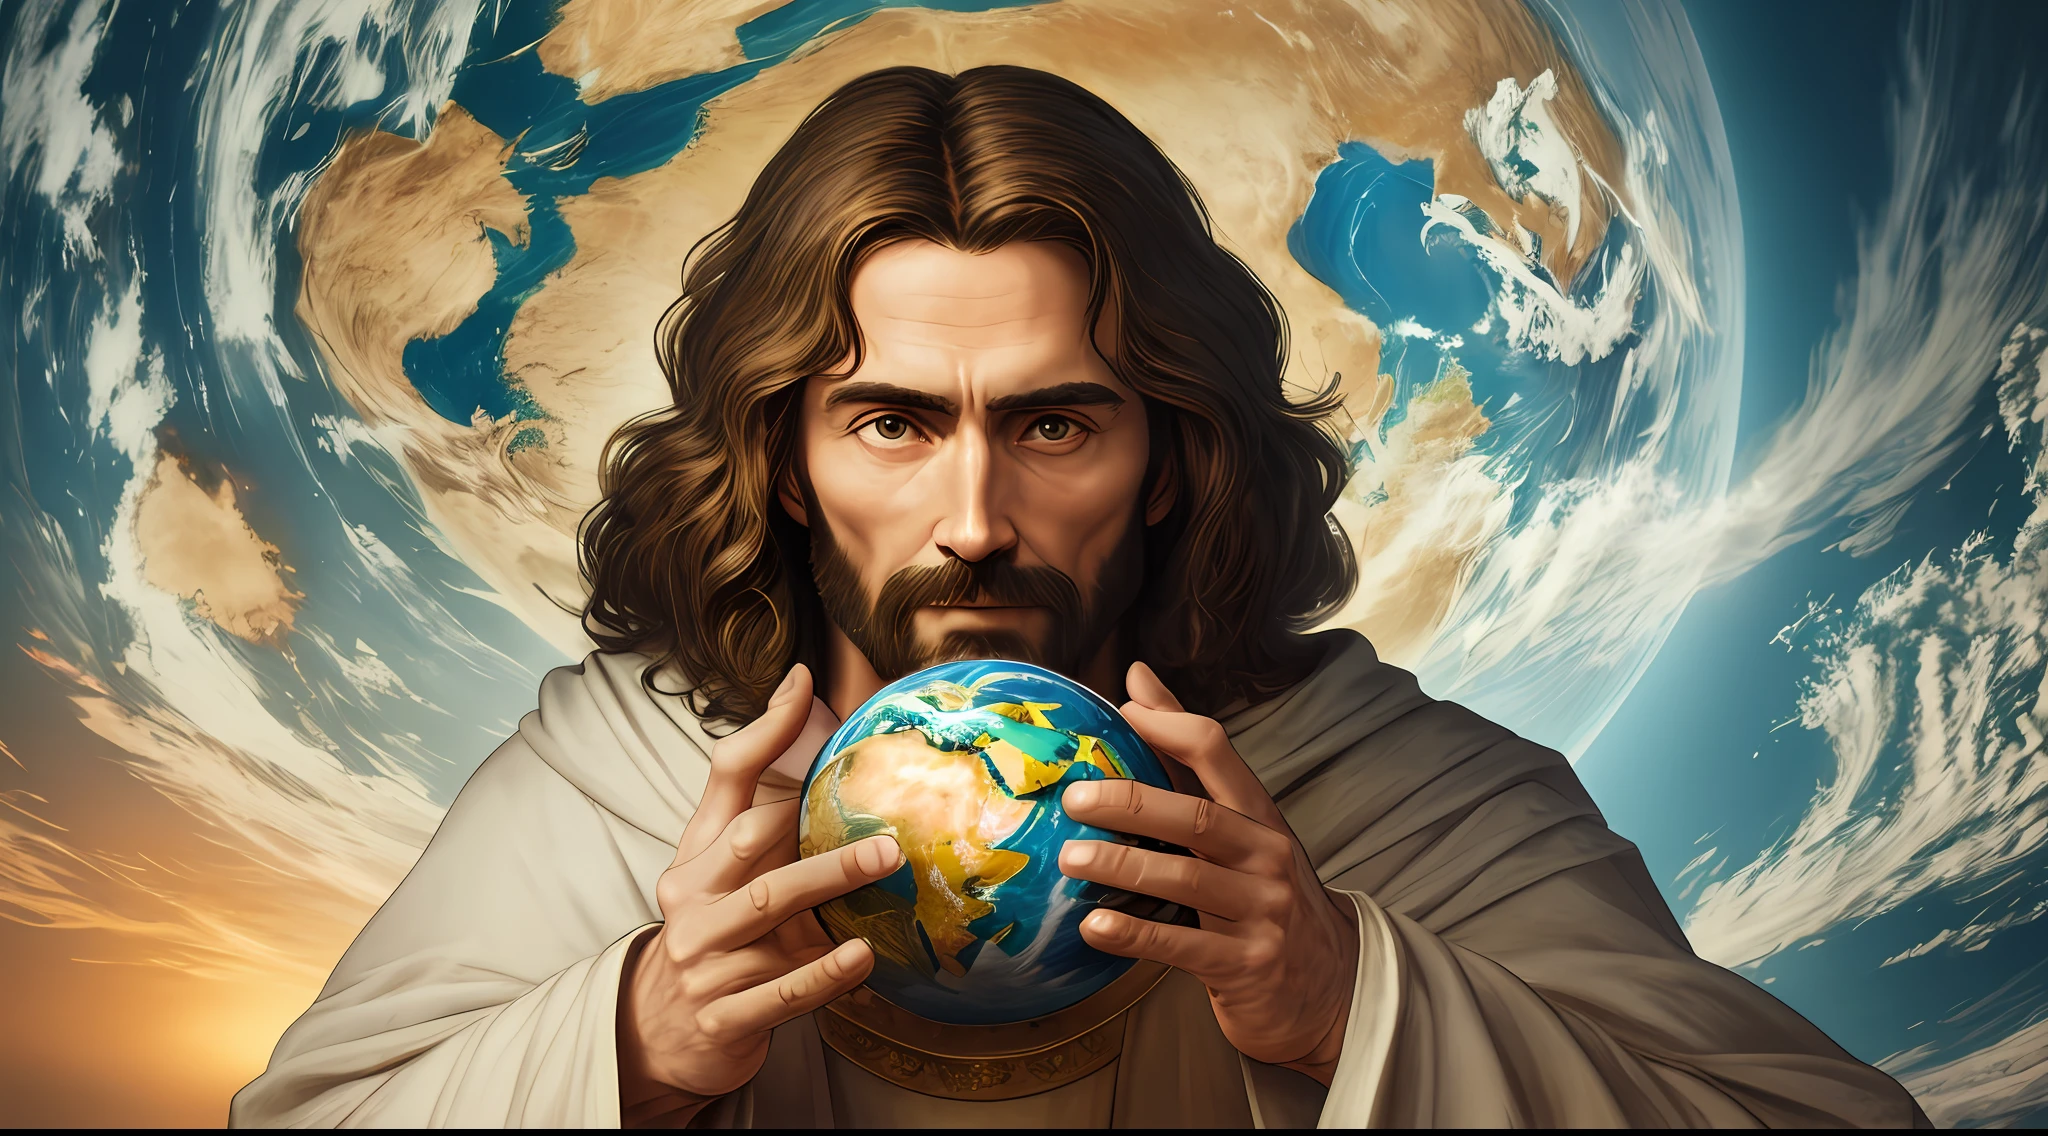 "具有完美解剖結構的逼真 8K 傑作: 耶穌基督一手握著地球, 臉不變形."